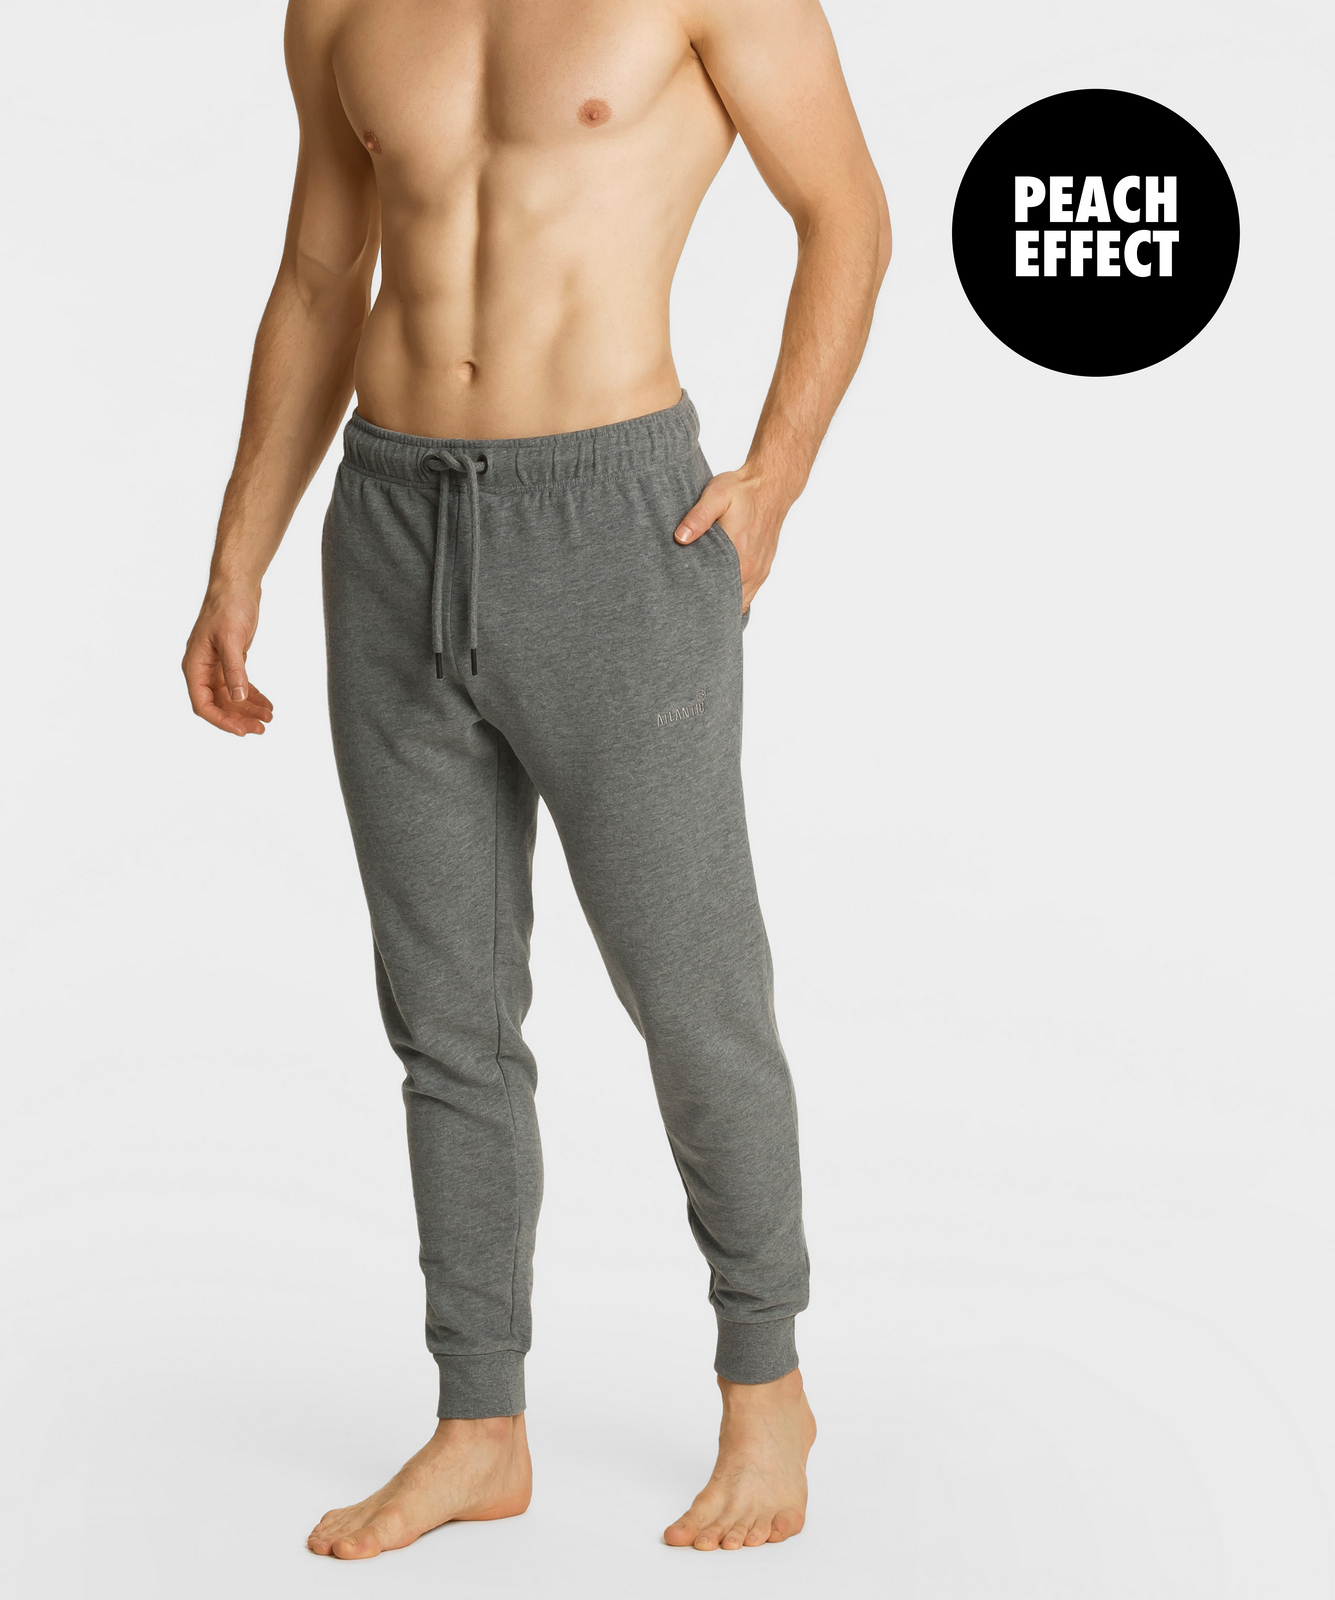 

Мужские брюки тренировочные Atlantic, 1 шт. в уп., хлопок, серый меланж, HMB-001